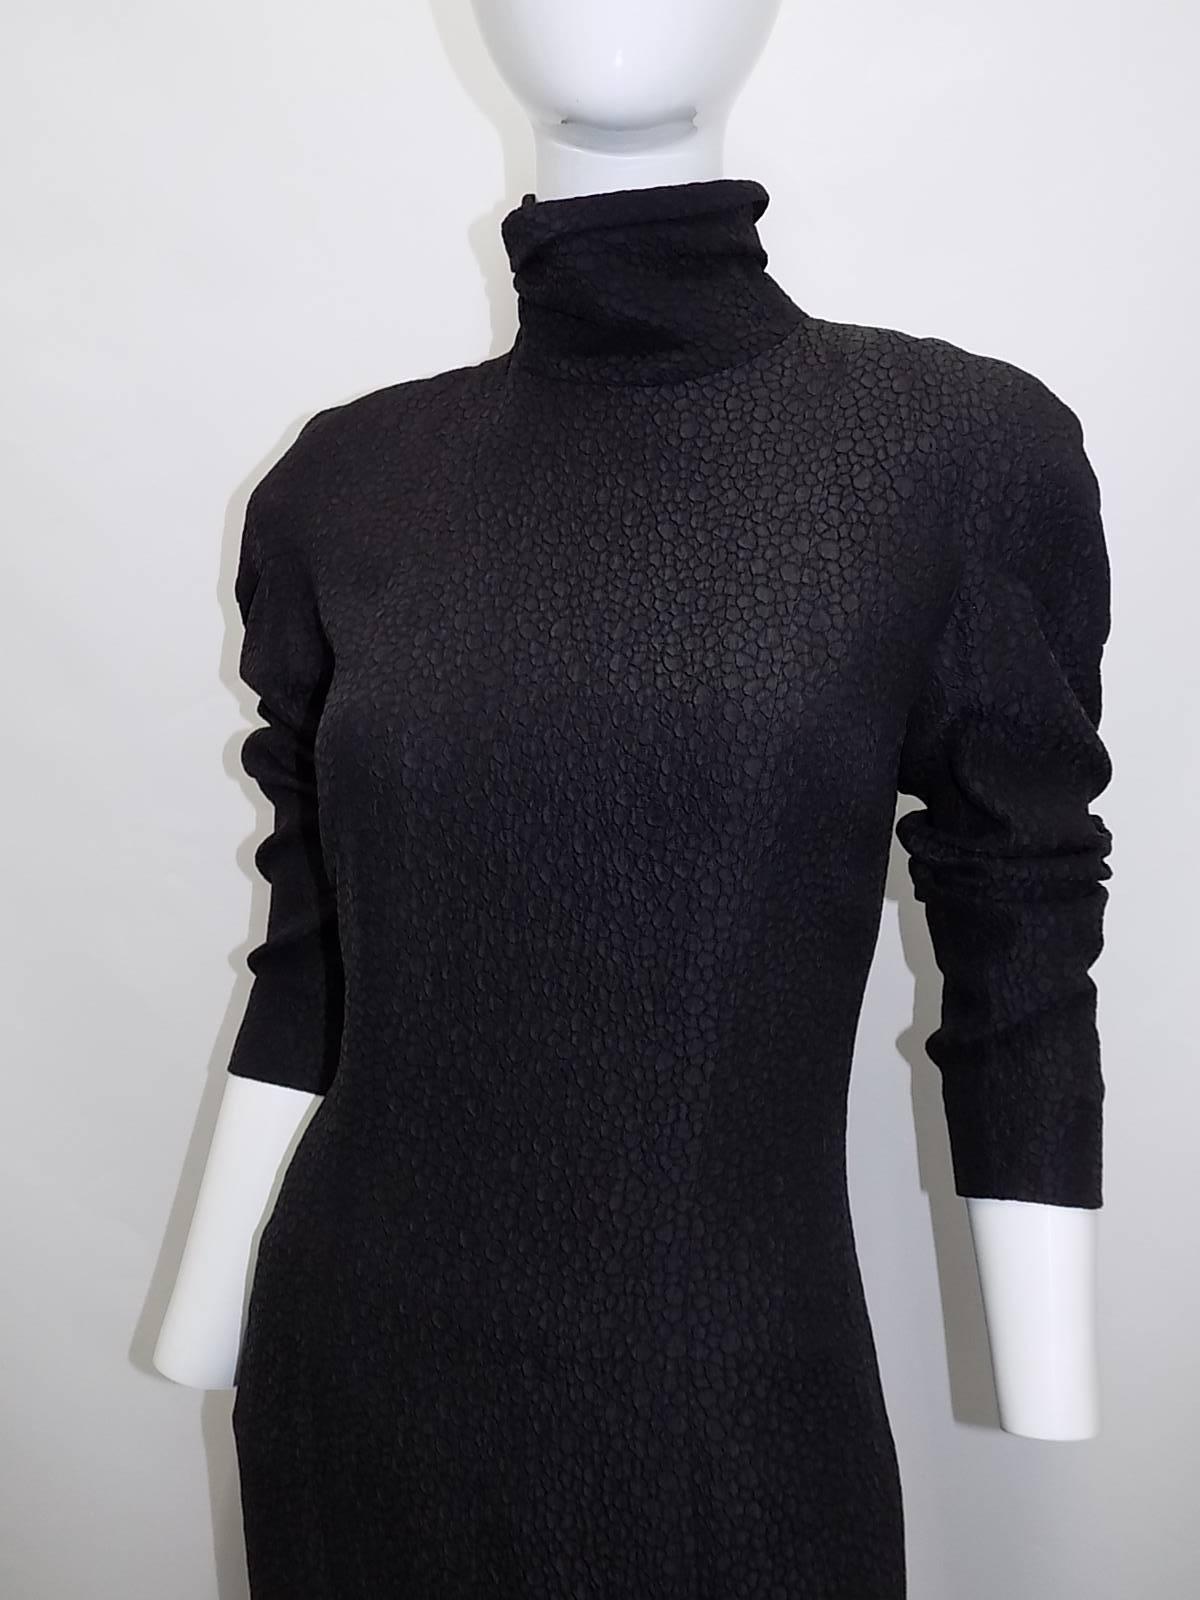 Women's vintage Lanvin paris black cocktail dress with bows  For Sale